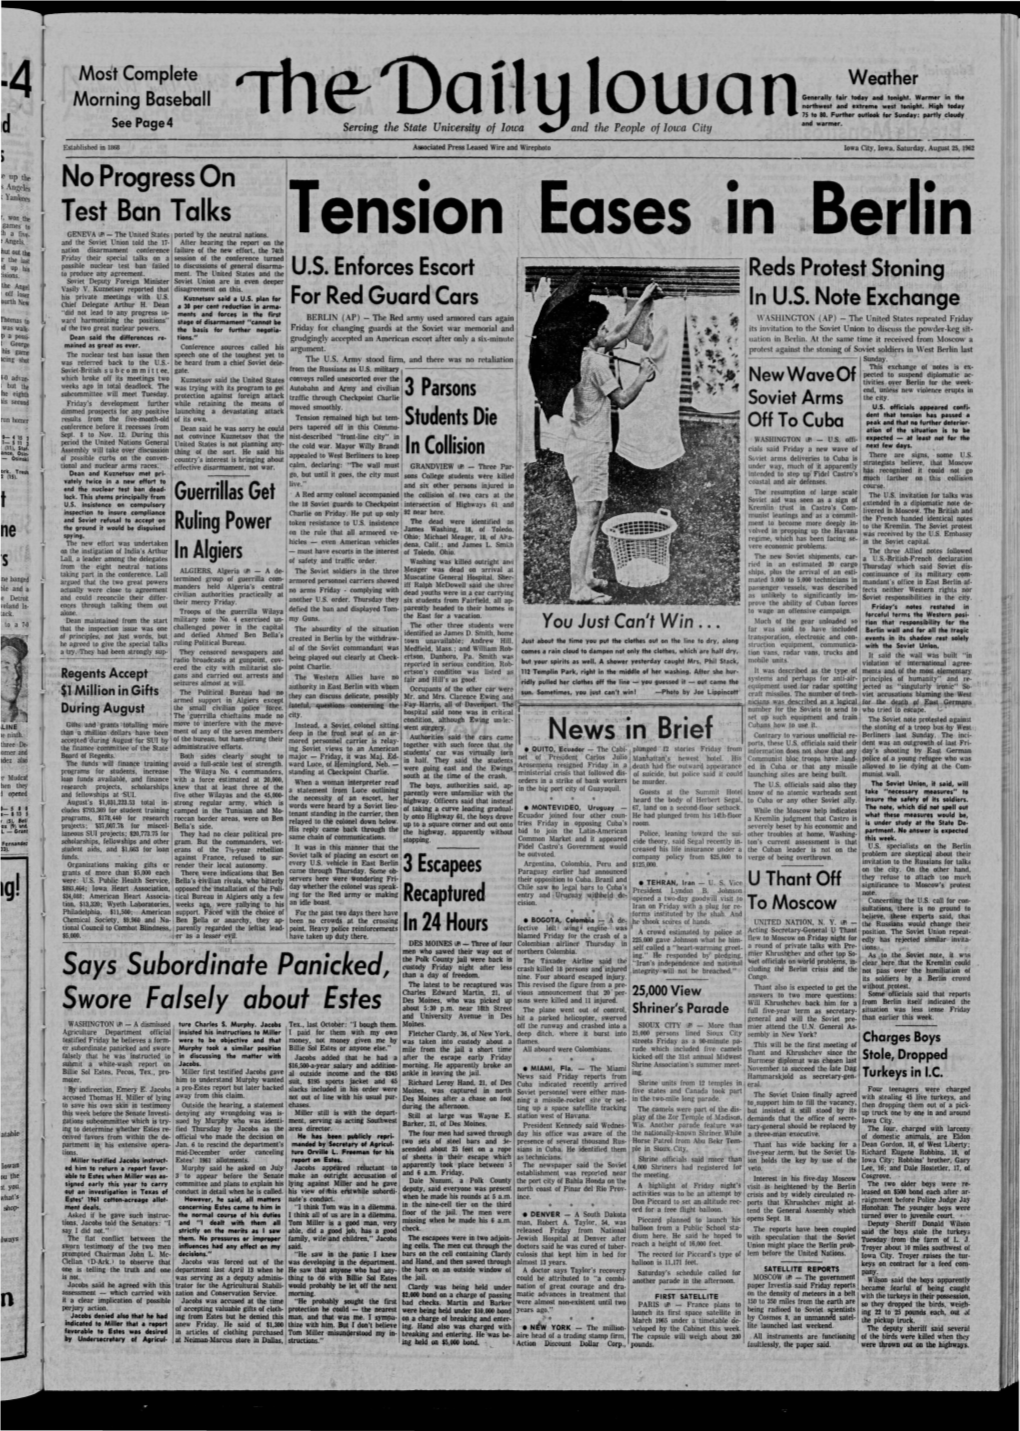 Daily Iowan (Iowa City, Iowa), 1962-08-25